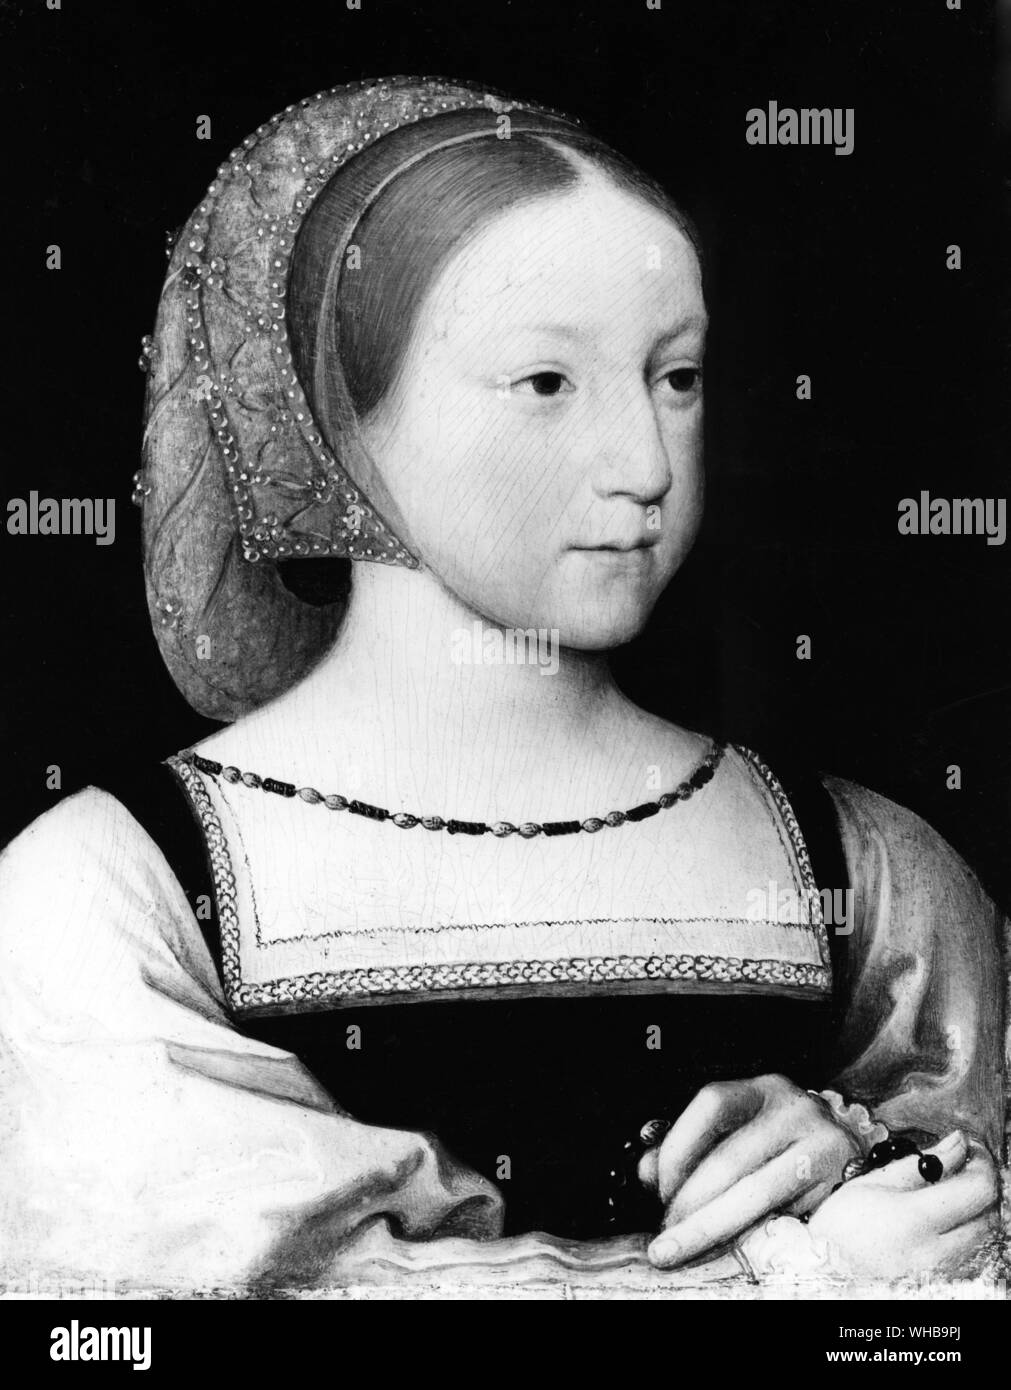 La Princesse Charlotte de France , 1516 - 1524 , l'un des quatre enfants de François I , qui est mort très jeune à près de 8 ans . Peinture de Jean Clouet c 1524 Banque D'Images